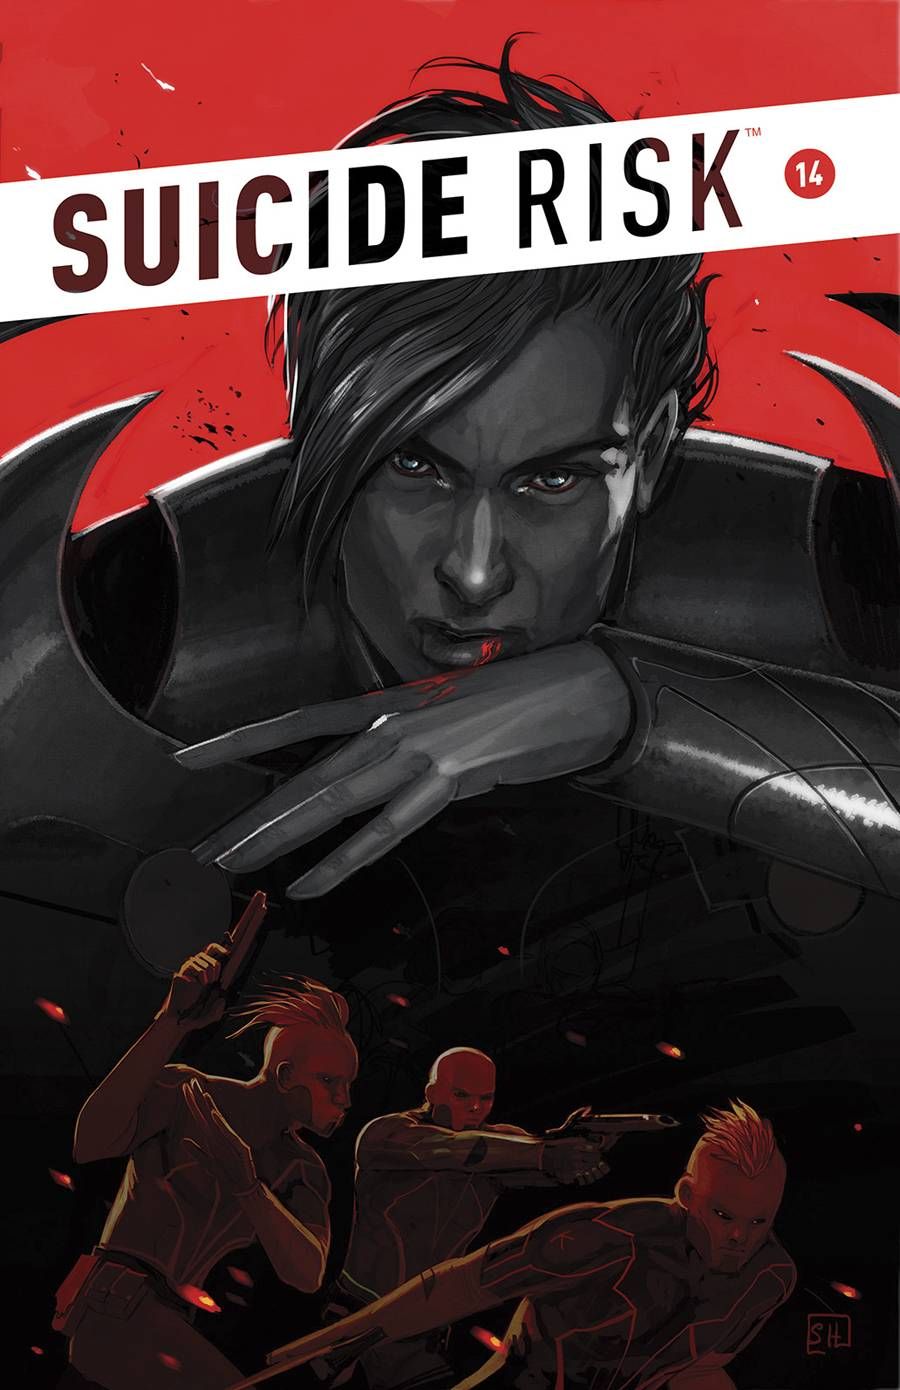 Suicide Risk #14 Comic